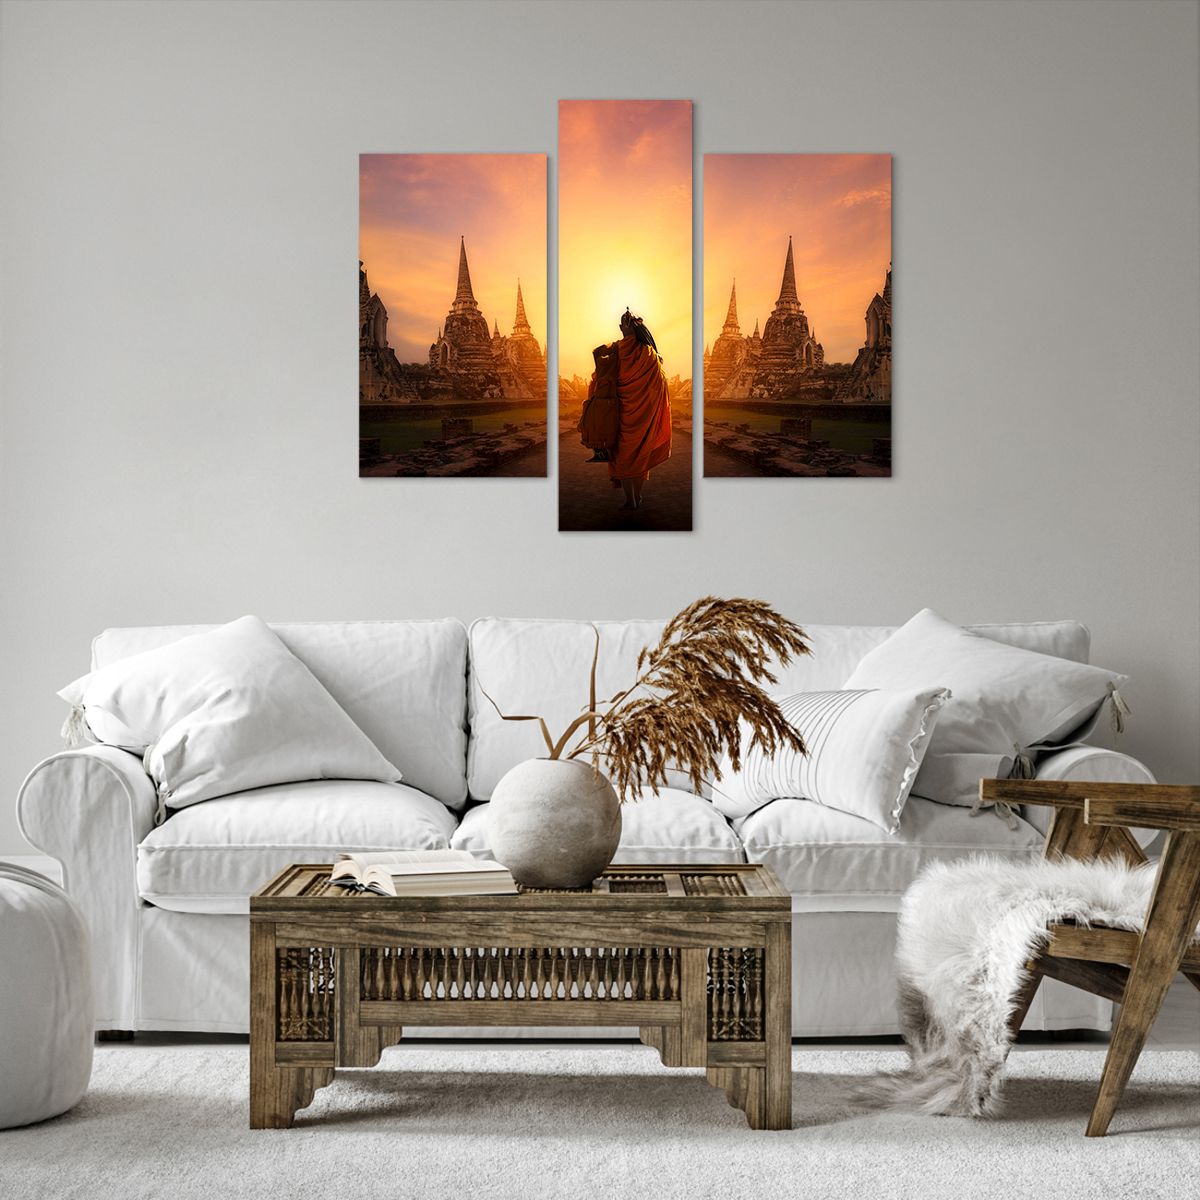 Impression sur toile Thaïlande, Impression sur toile Bouddhisme, Impression sur toile Temple, Impression sur toile Moine, Impression sur toile Méditation